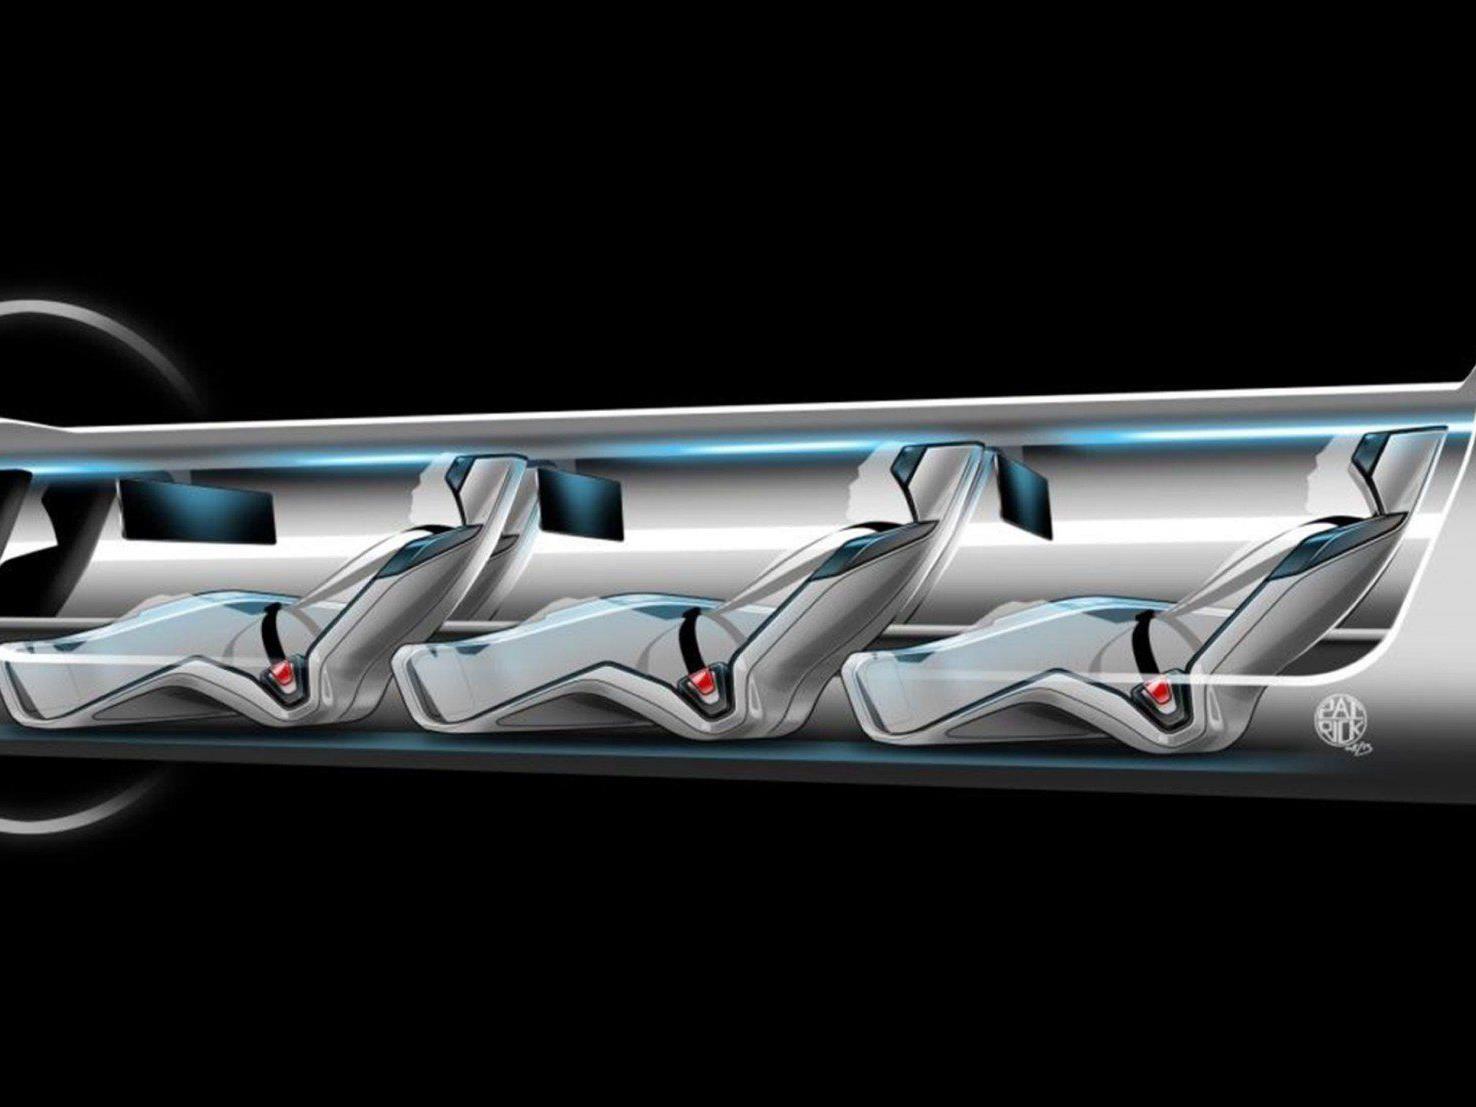 Erdbeben, Geld, Übergewicht - Die Entwicklung des Hyperloops steht schon jetzt vor einigen Problemen.